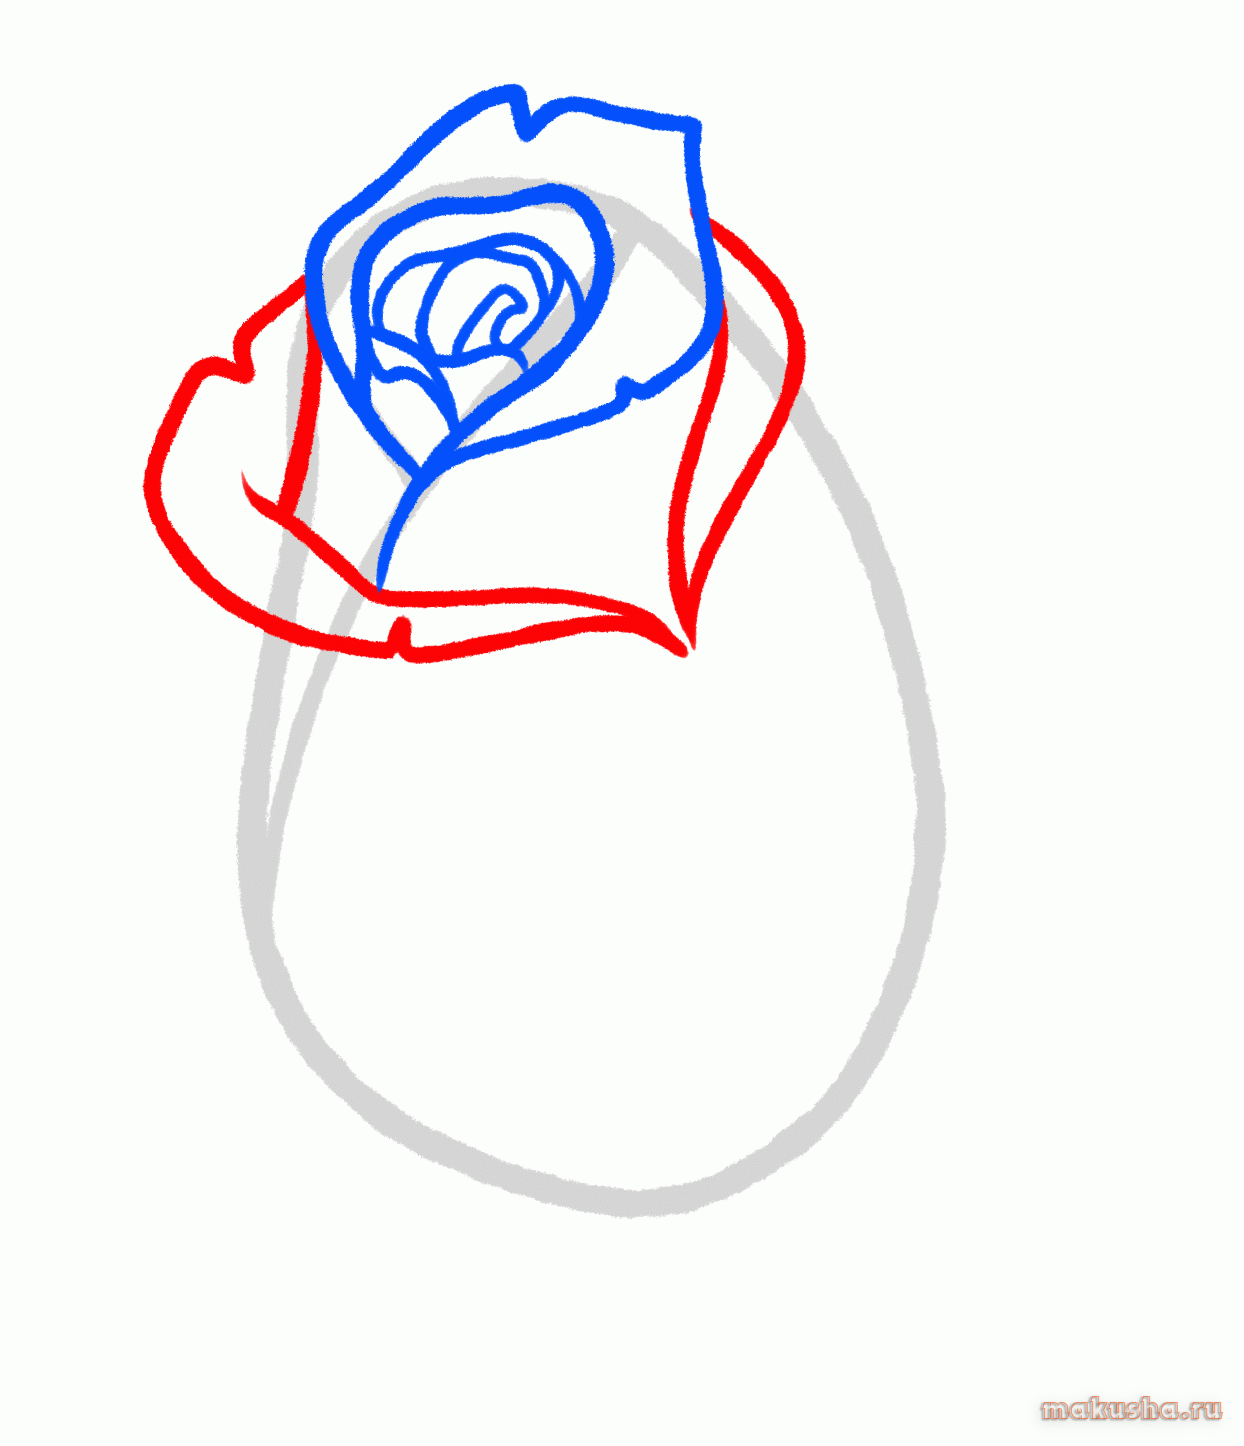 Как нарисовать красивую розу: 7 легких способов (пошагово)